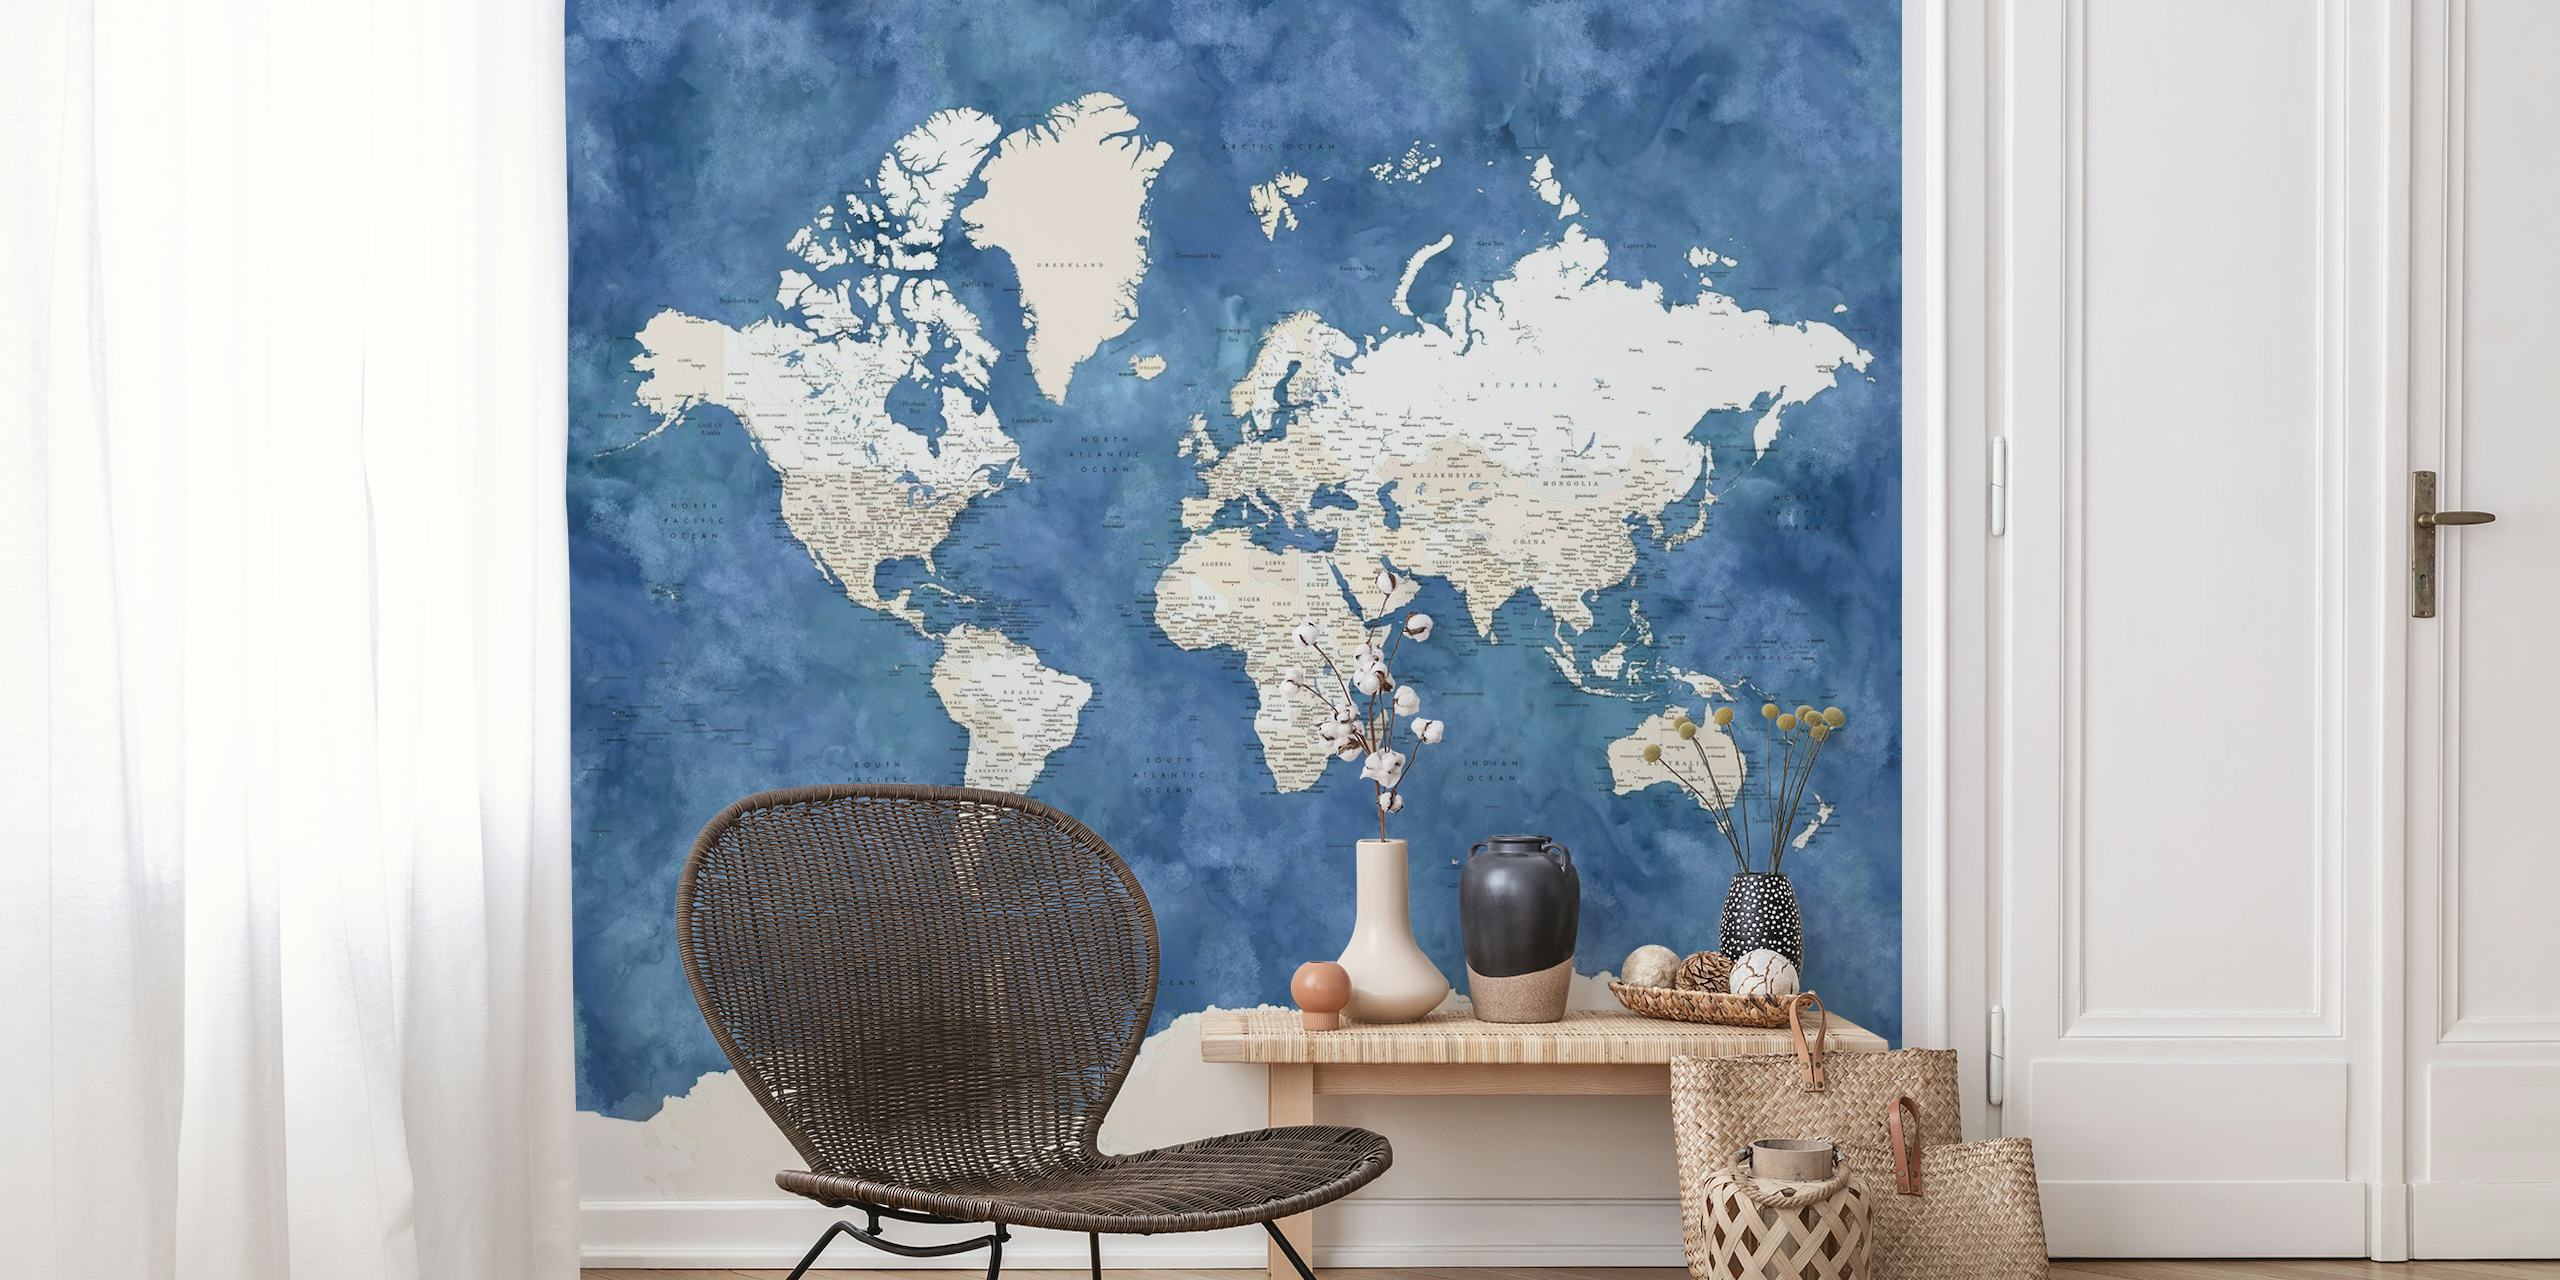 Wandbild mit Weltkarte und Antarktis-Zentrum in Weiß- und Blautönen